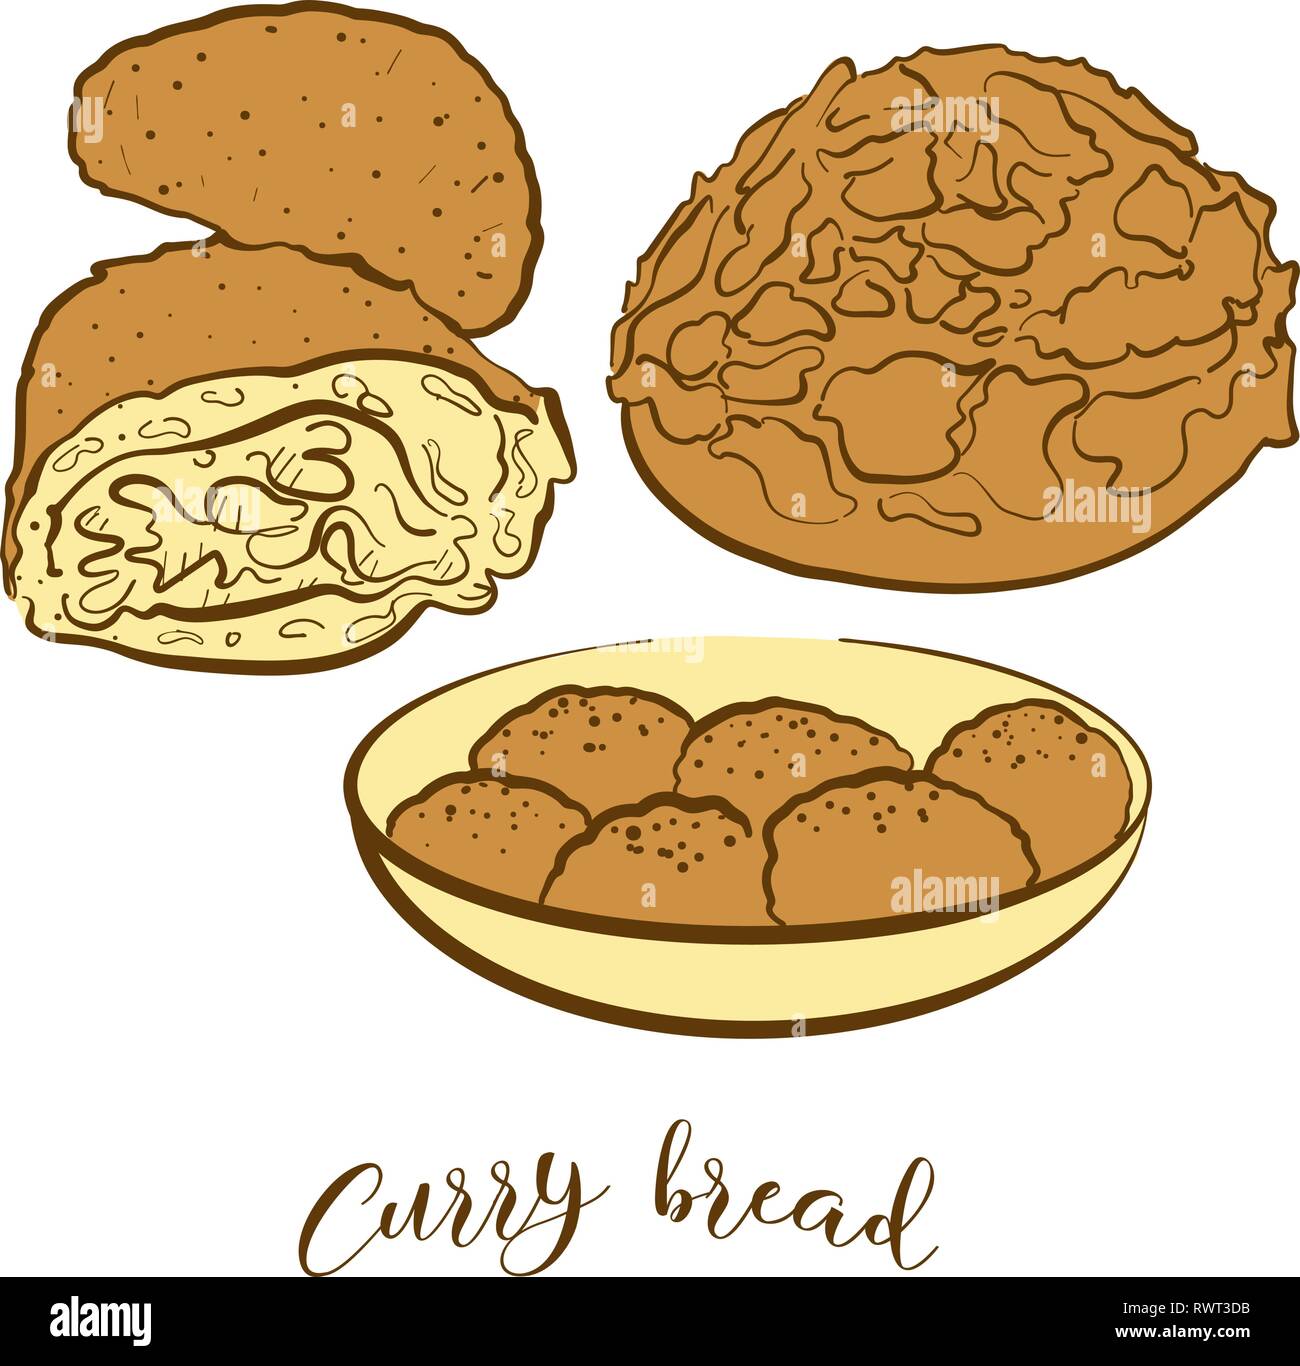 Farbige Skizzen von Curry Brot Brot. Vektor-zeichnung Brötchen essen, in der Regel in Japan bekannt. Farbige Brot Abbildung Serie. Stock Vektor